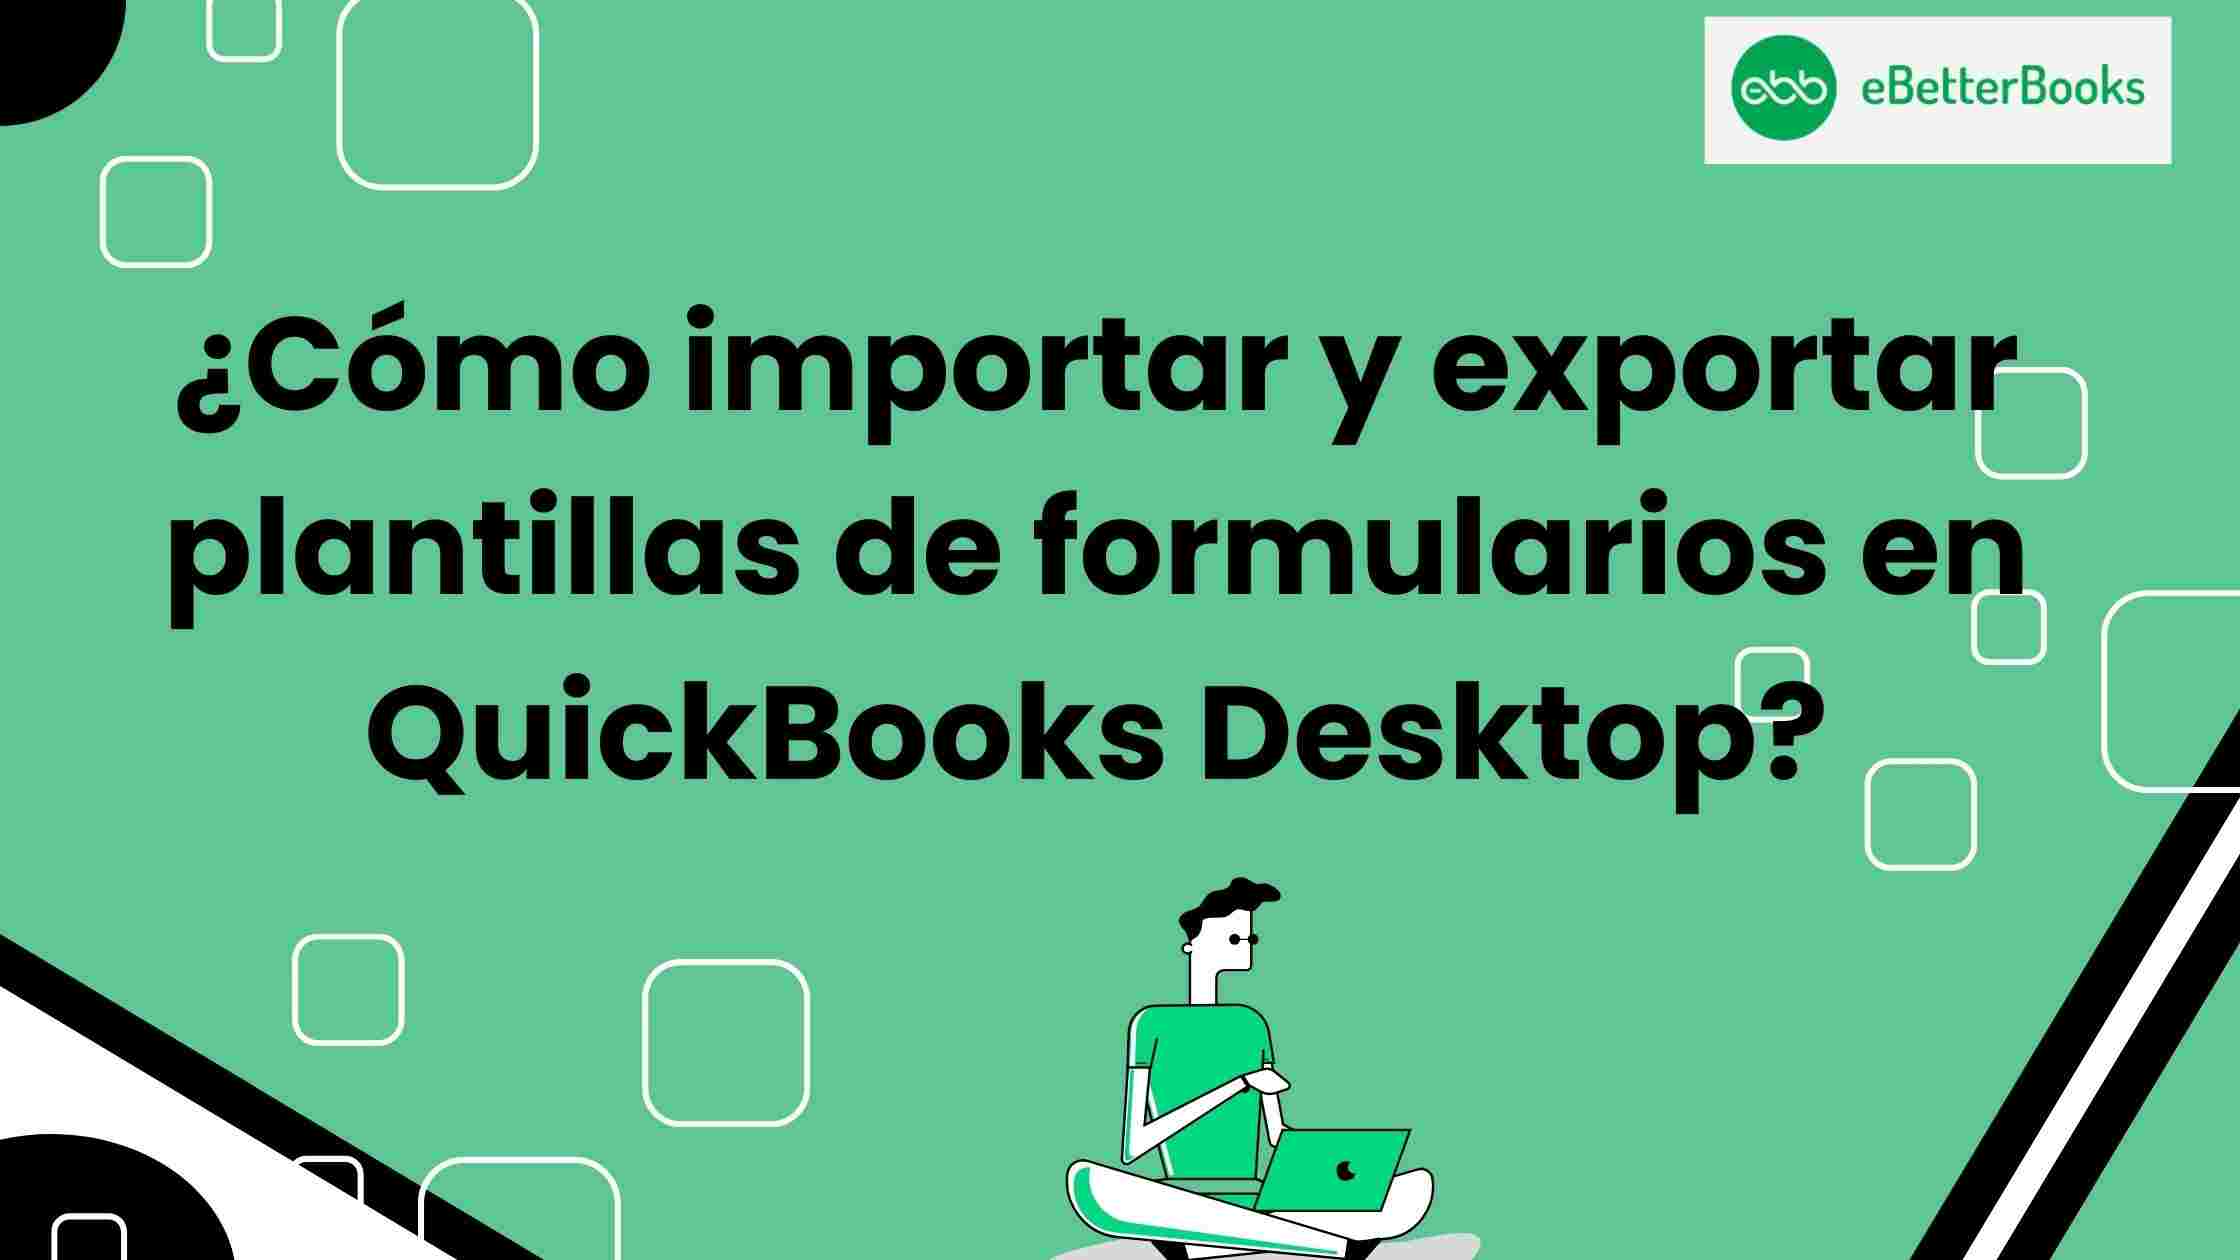 ¿Cómo importar y exportar plantillas de formularios en QuickBooks Desktop?